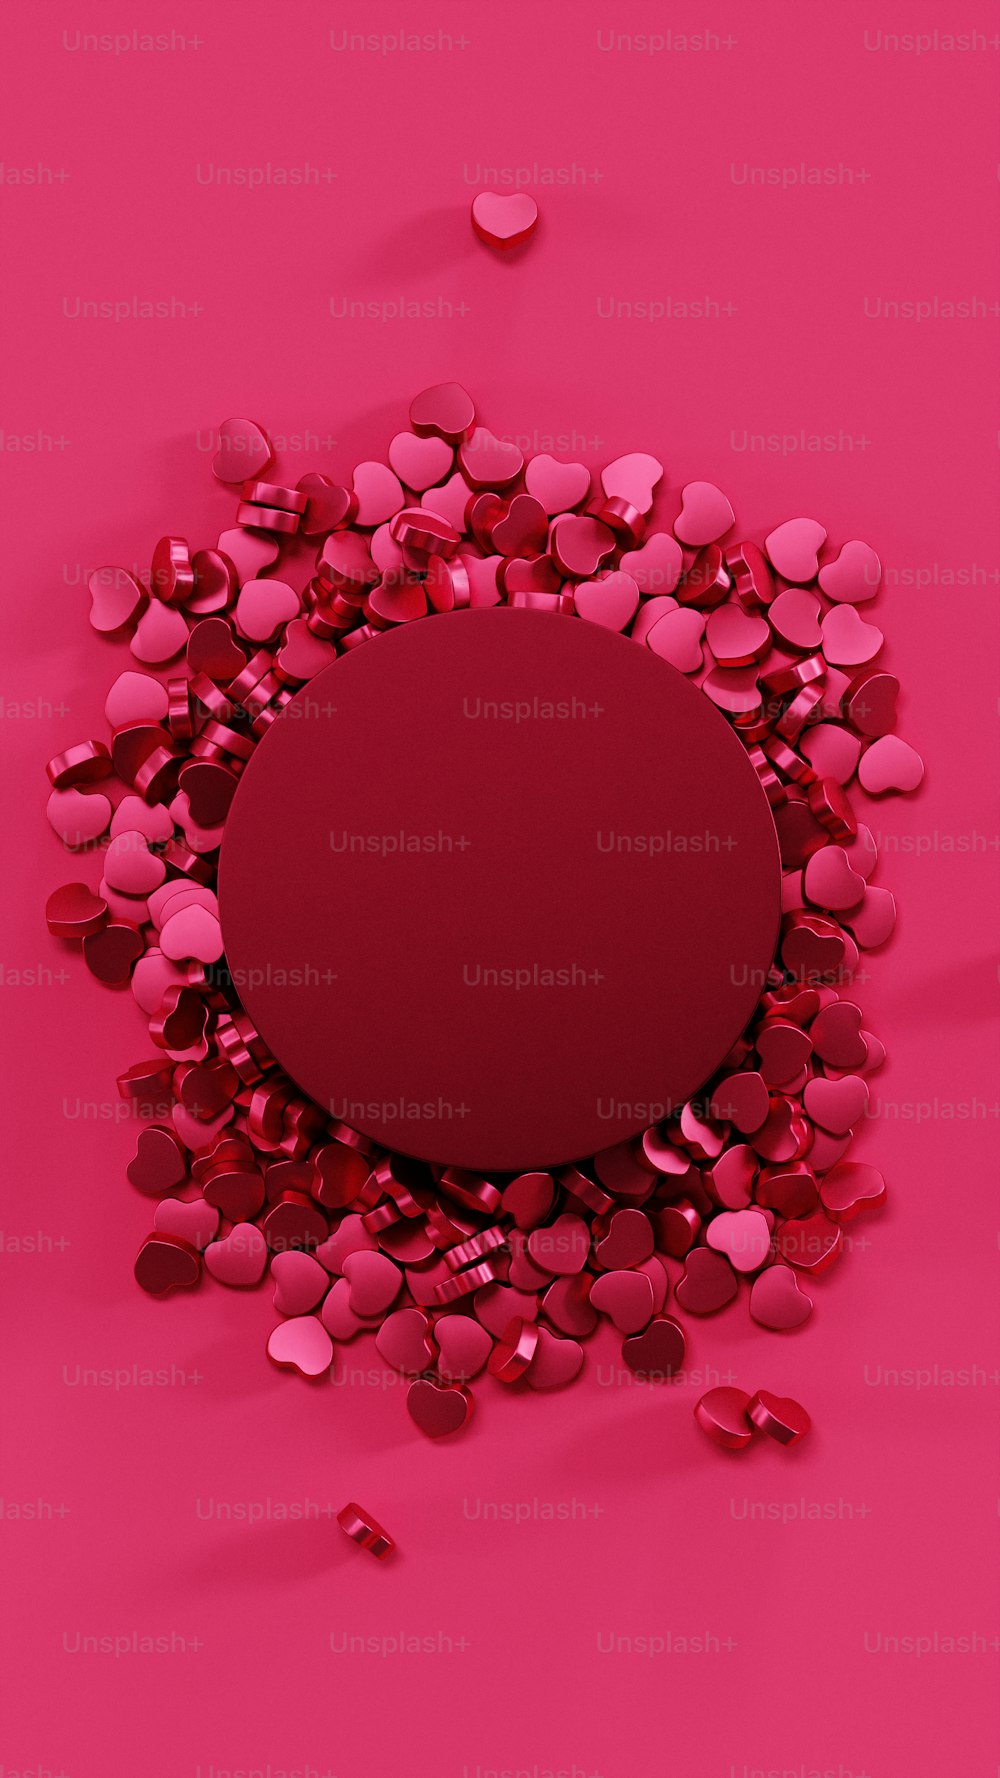 Ein roter Kreis, umgeben von Herzen auf rosa Hintergrund